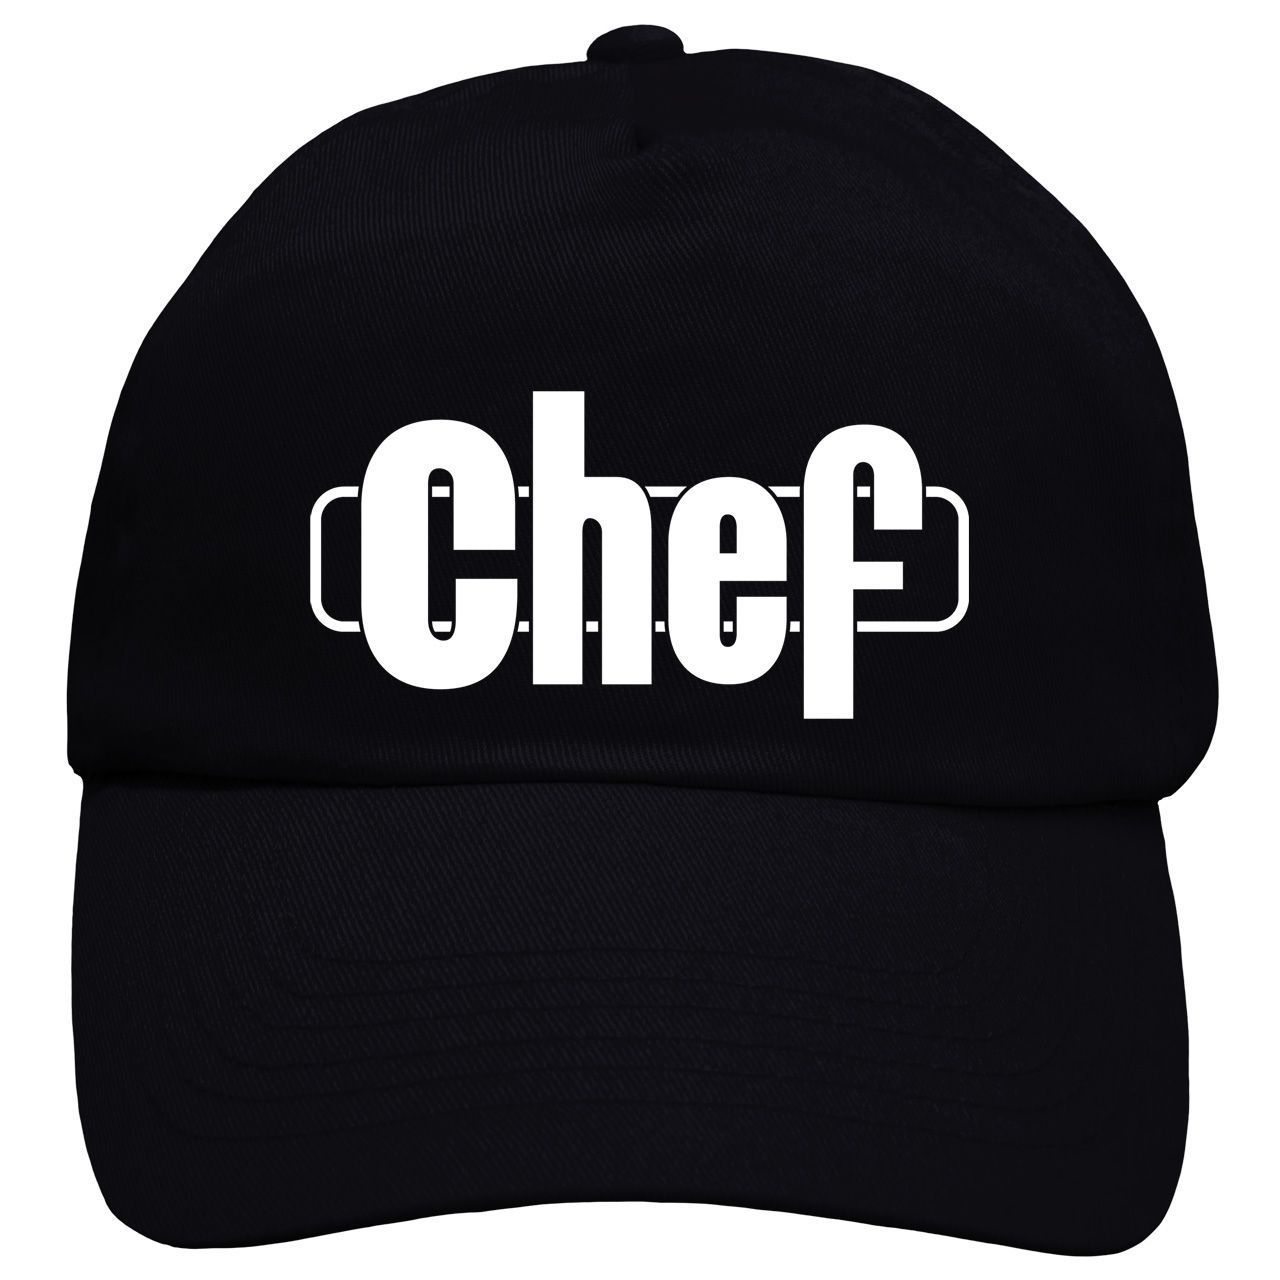 Chef Cap Rundschirm schwarz